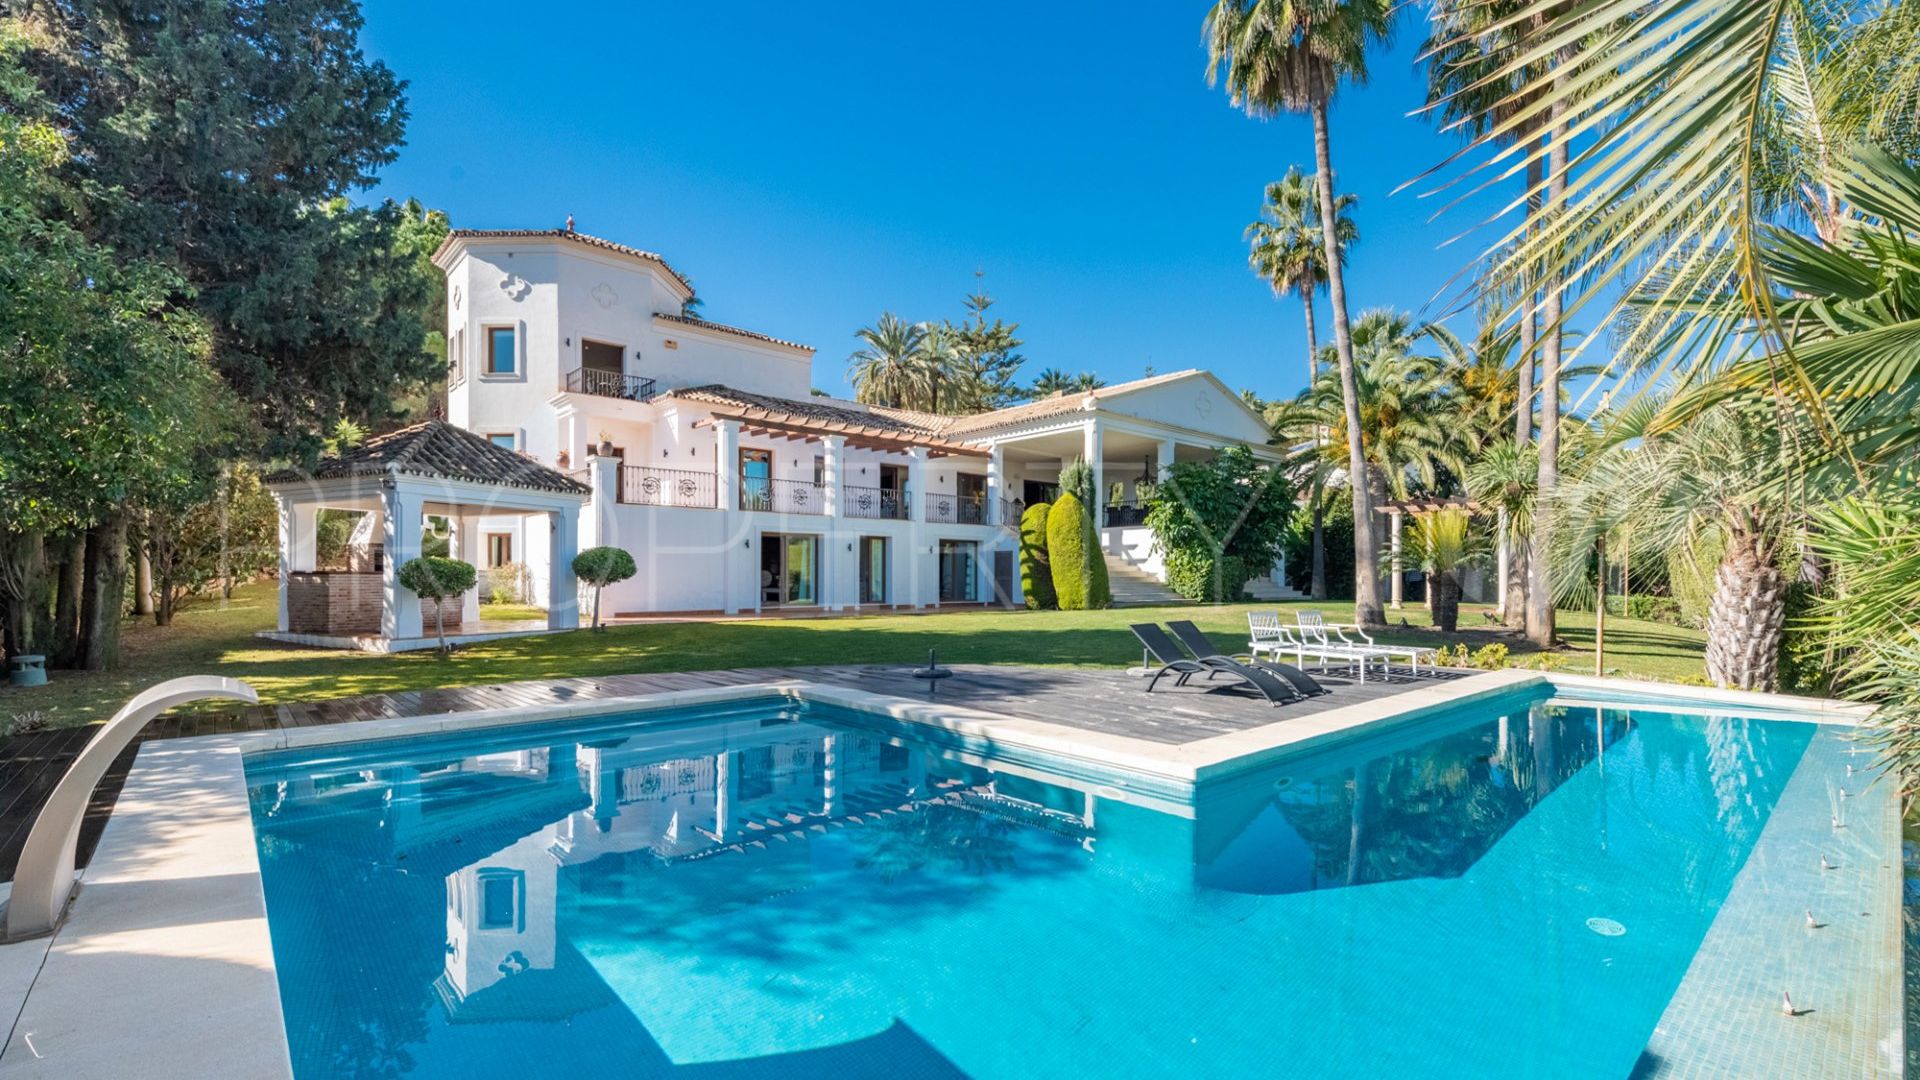 6 bedrooms villa in Las Brisas for sale